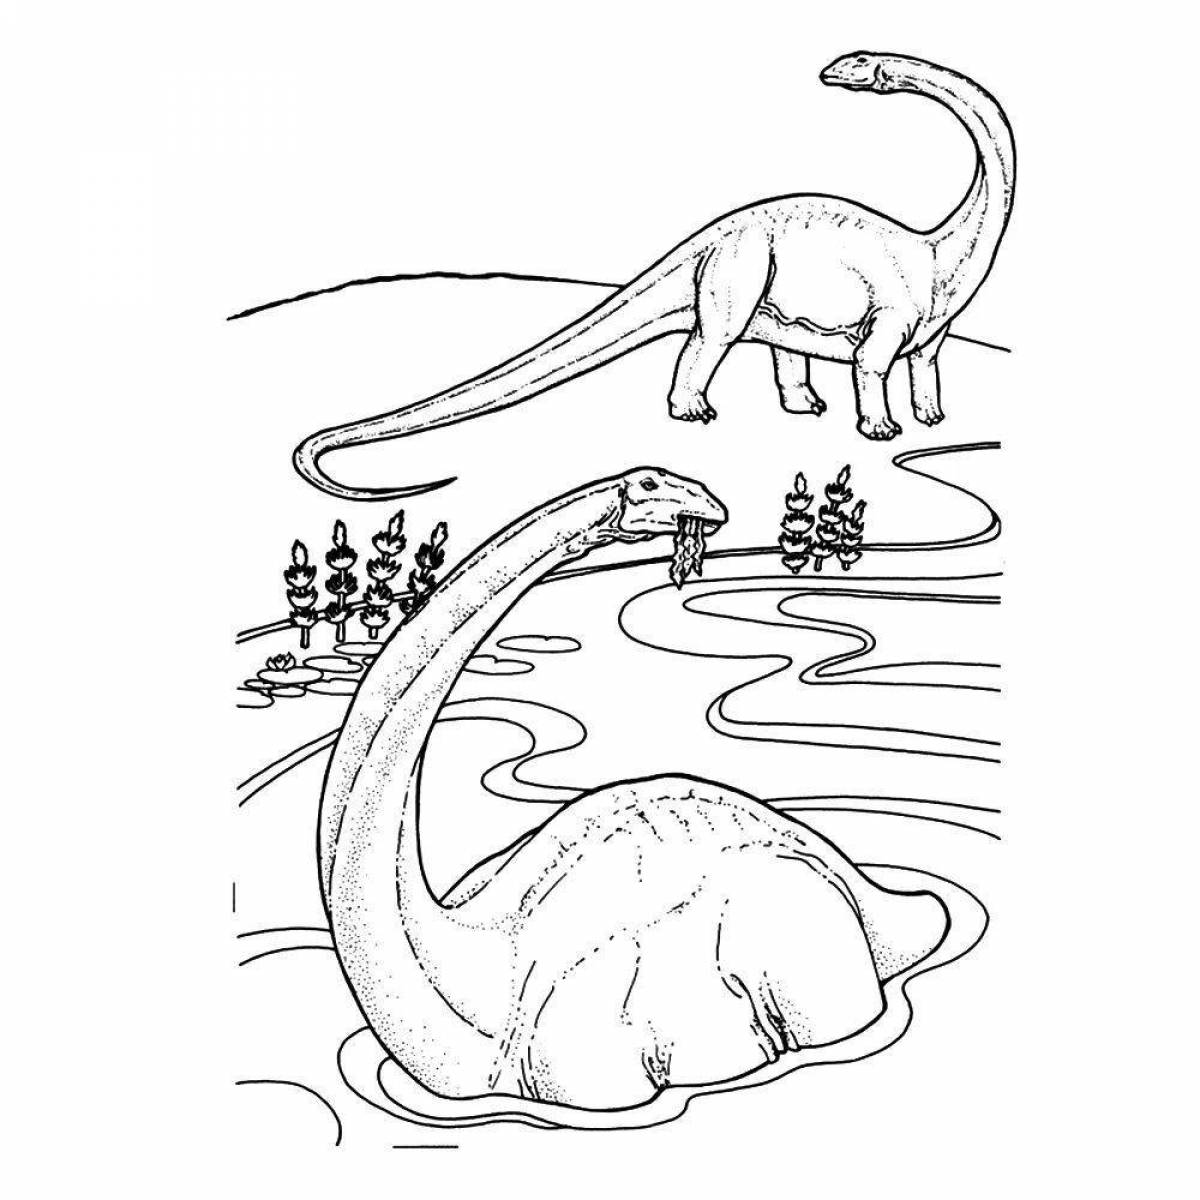 Great Apatosaurus coloring book